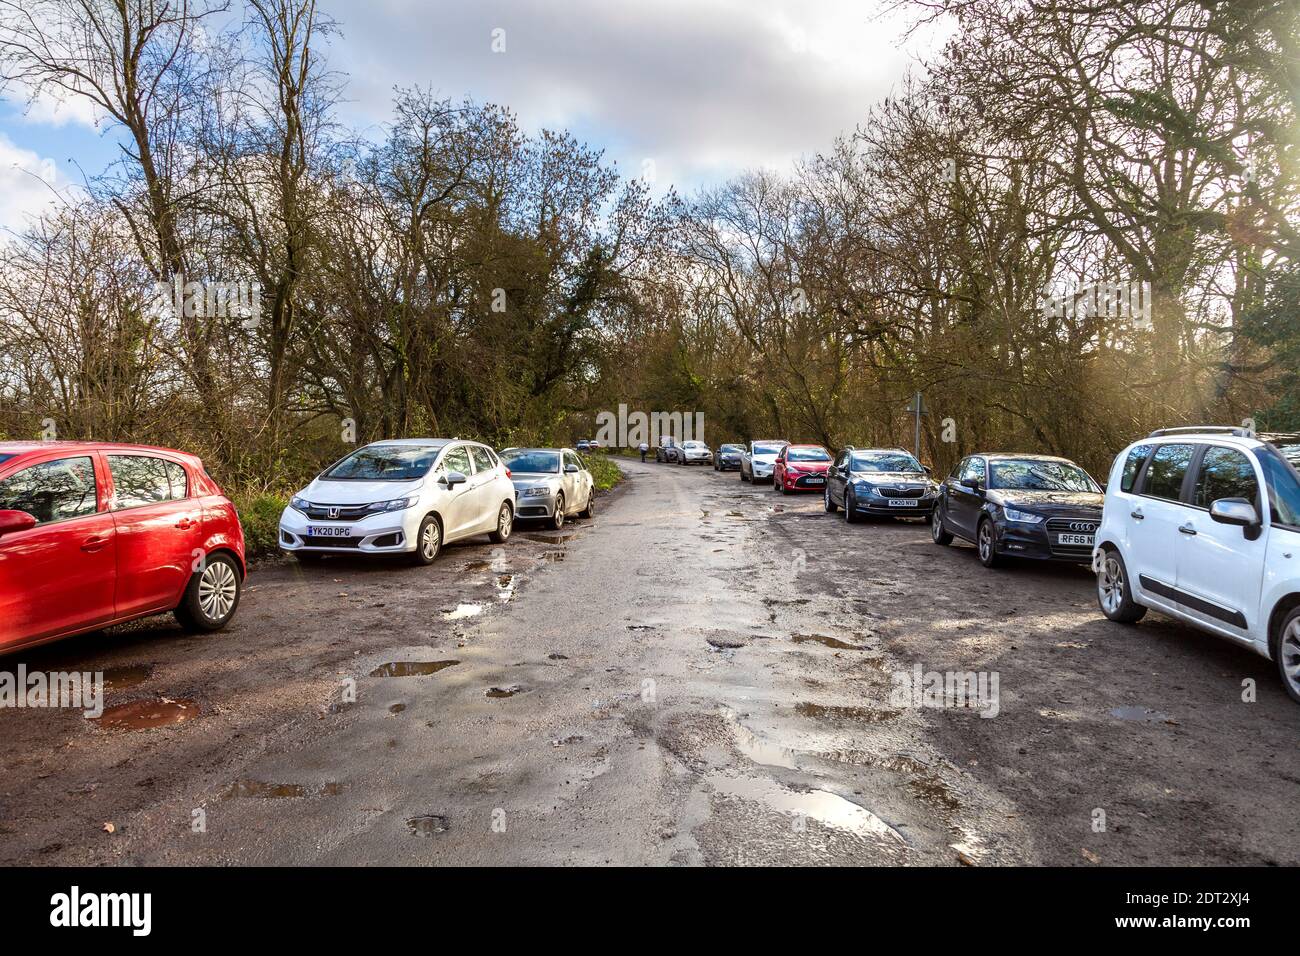 21 décembre 2020 - parking plein de voitures à Maulden Wood, Bedfordshire, Royaume-Uni, le niveau de restriction du coronavirus est passé du niveau 3 au niveau 4 le week-end précédant Noël Banque D'Images